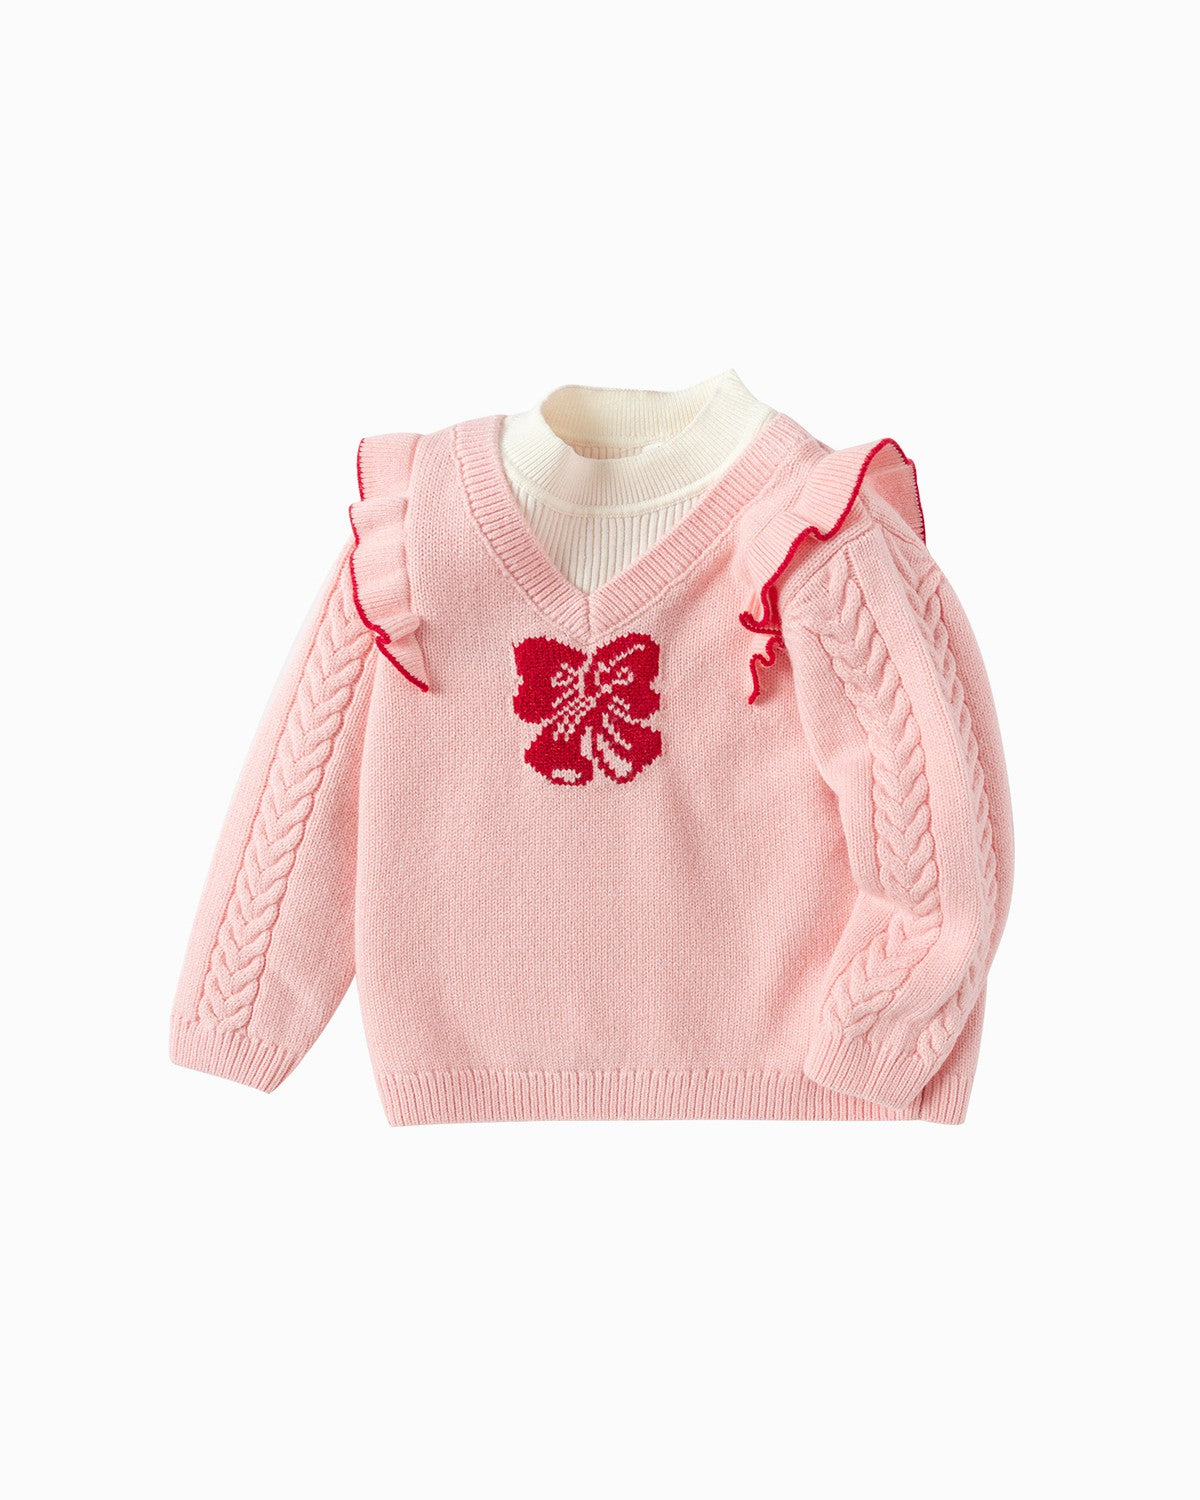 Balabala Toddler Girl Visions Pink Sweater